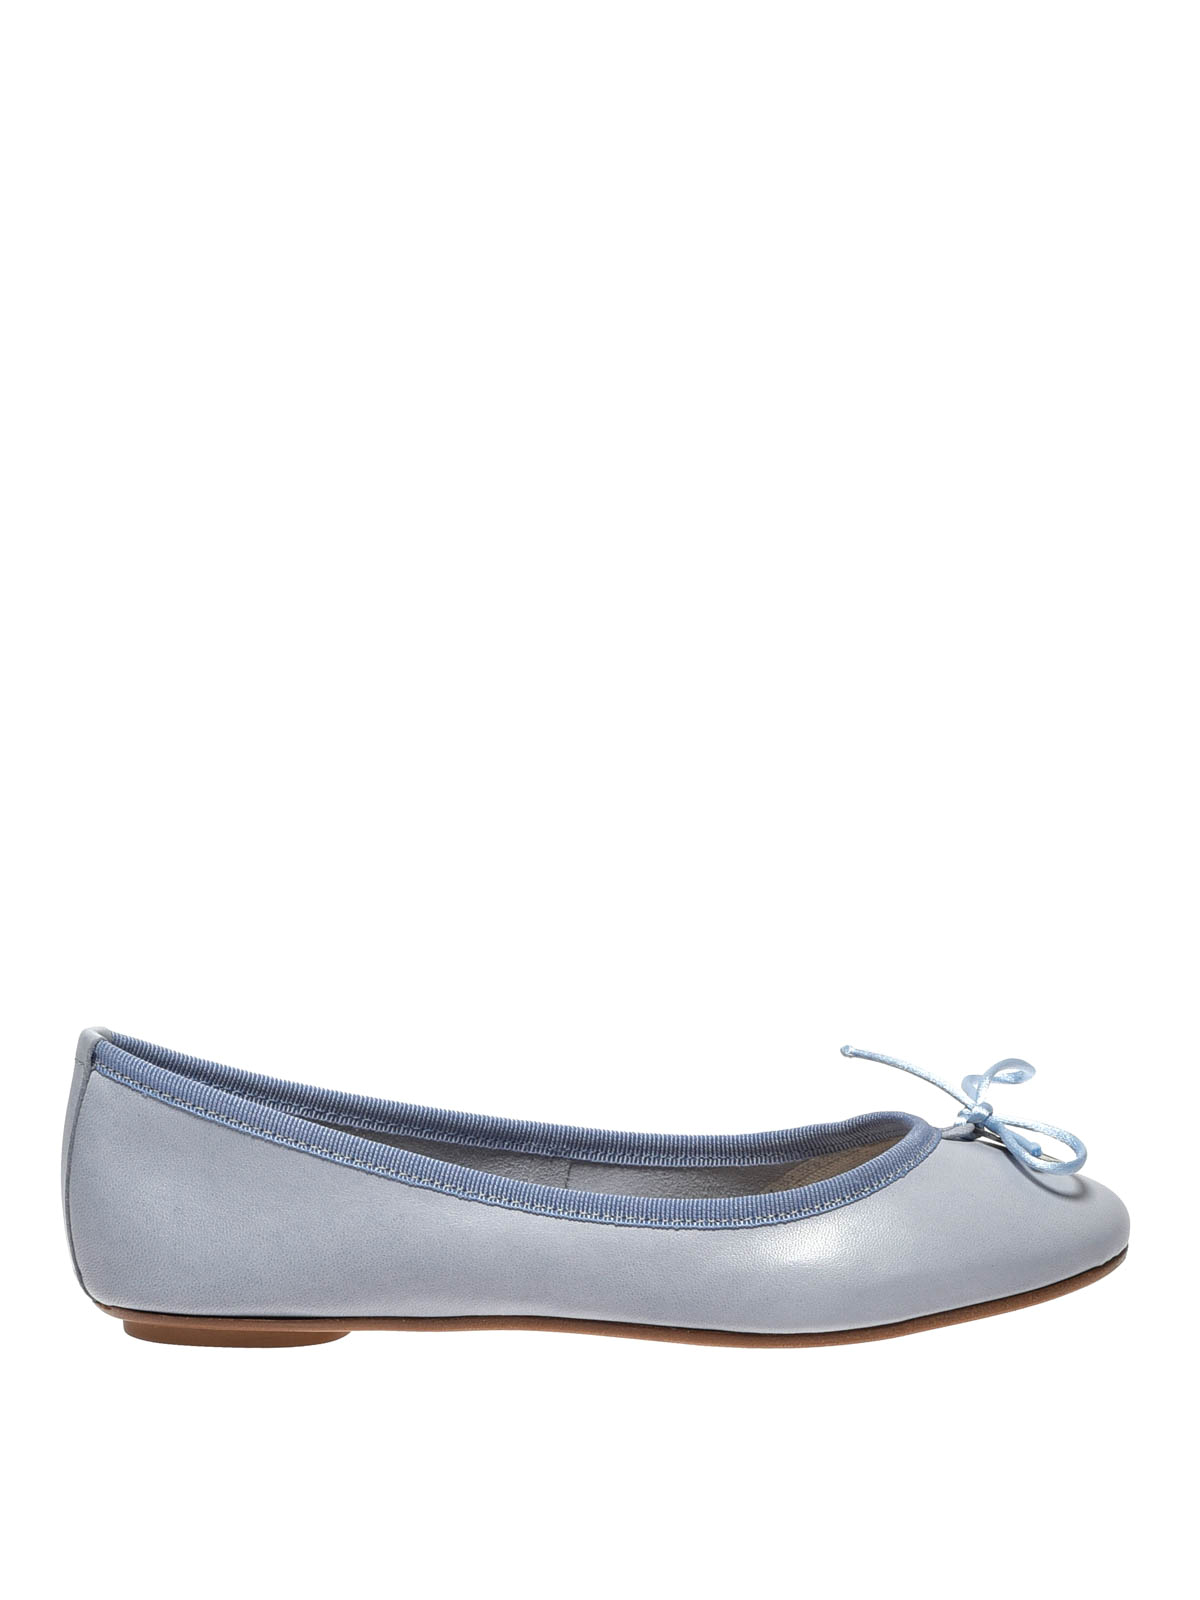 Flat shoes Anna Baiguera - Annette Flex light blue leather flats ...